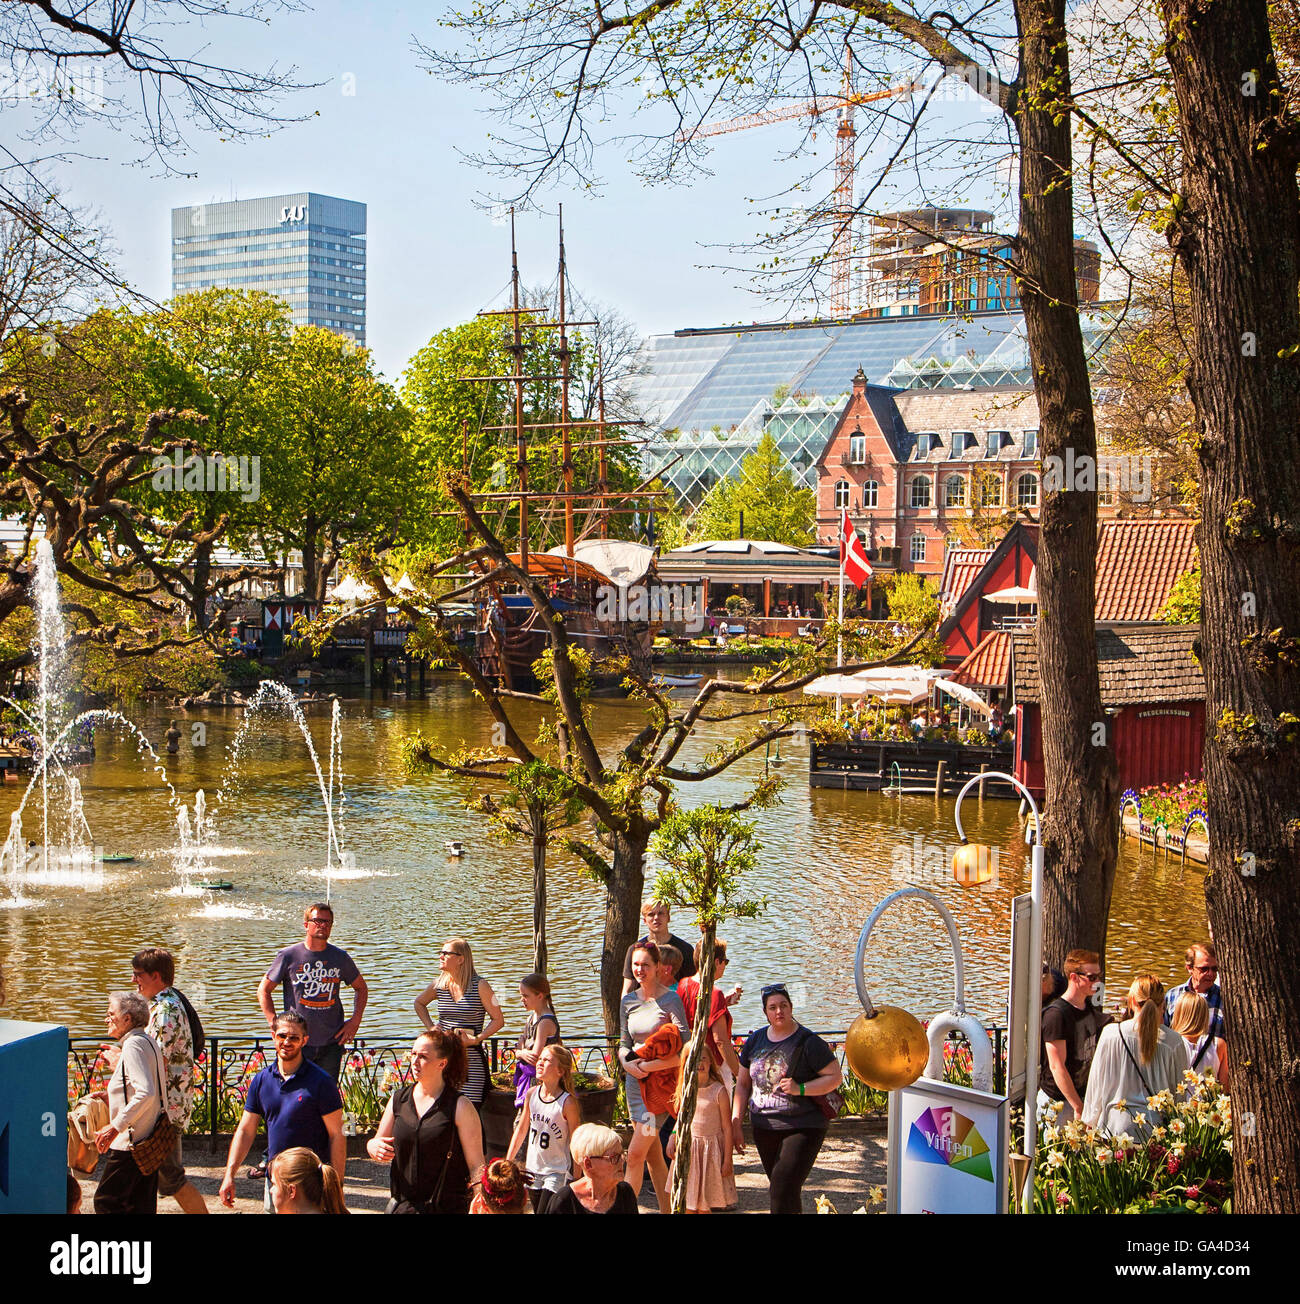 Copenhague, Danemark - touristes et l'étang avec des jets d'eau au célèbre parc d'Les Jardins de Tivoli à Copenhague Banque D'Images